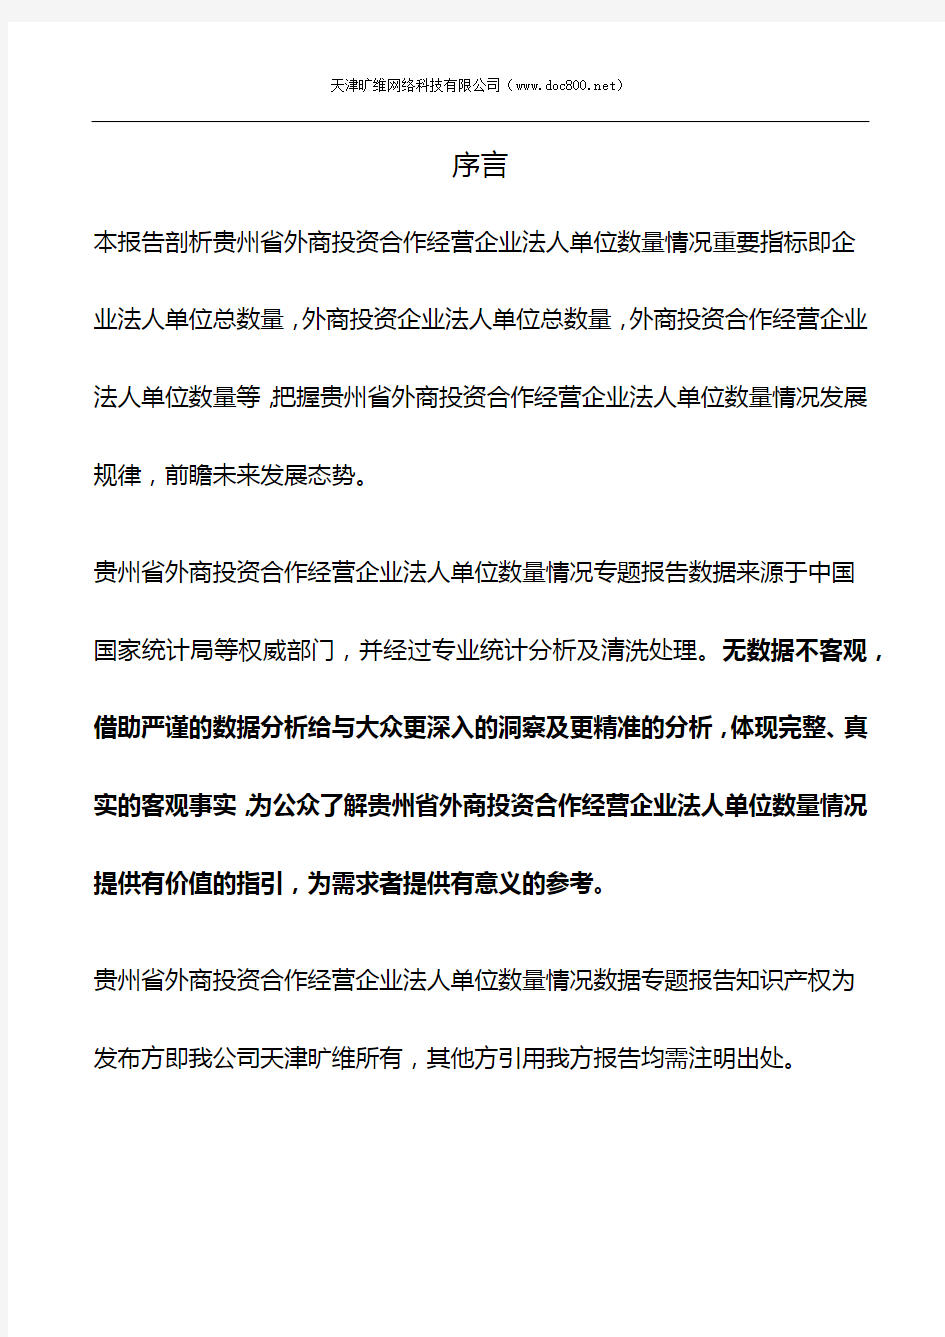 贵州省外商投资合作经营企业法人单位数量情况3年数据专题报告2019版